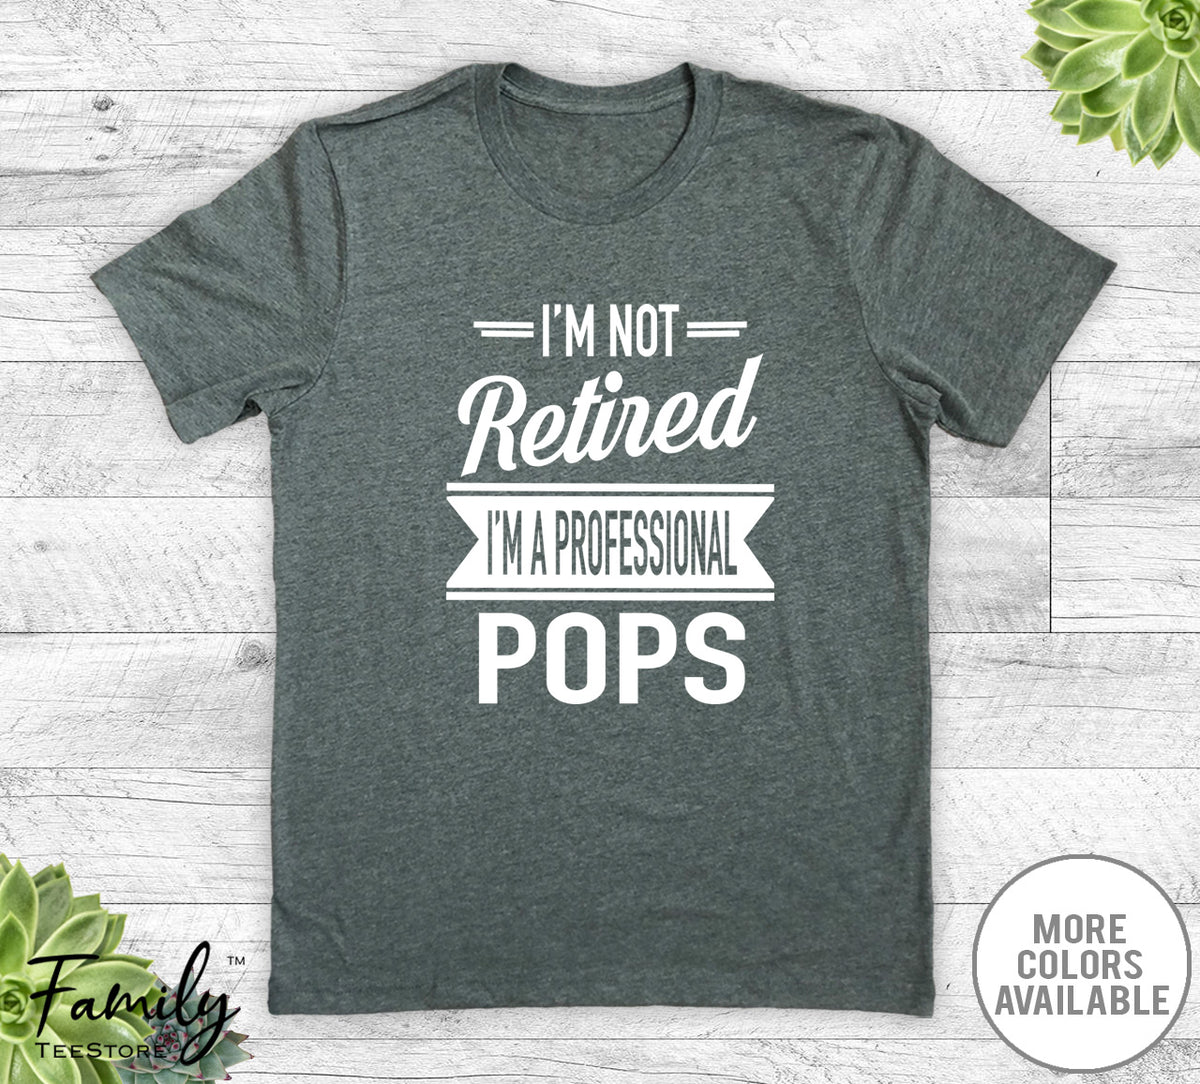 I'm Not Retired I'm A Professional Pops - Unisex T-shirt - Pops Shirt - Pops Gift - familyteeprints